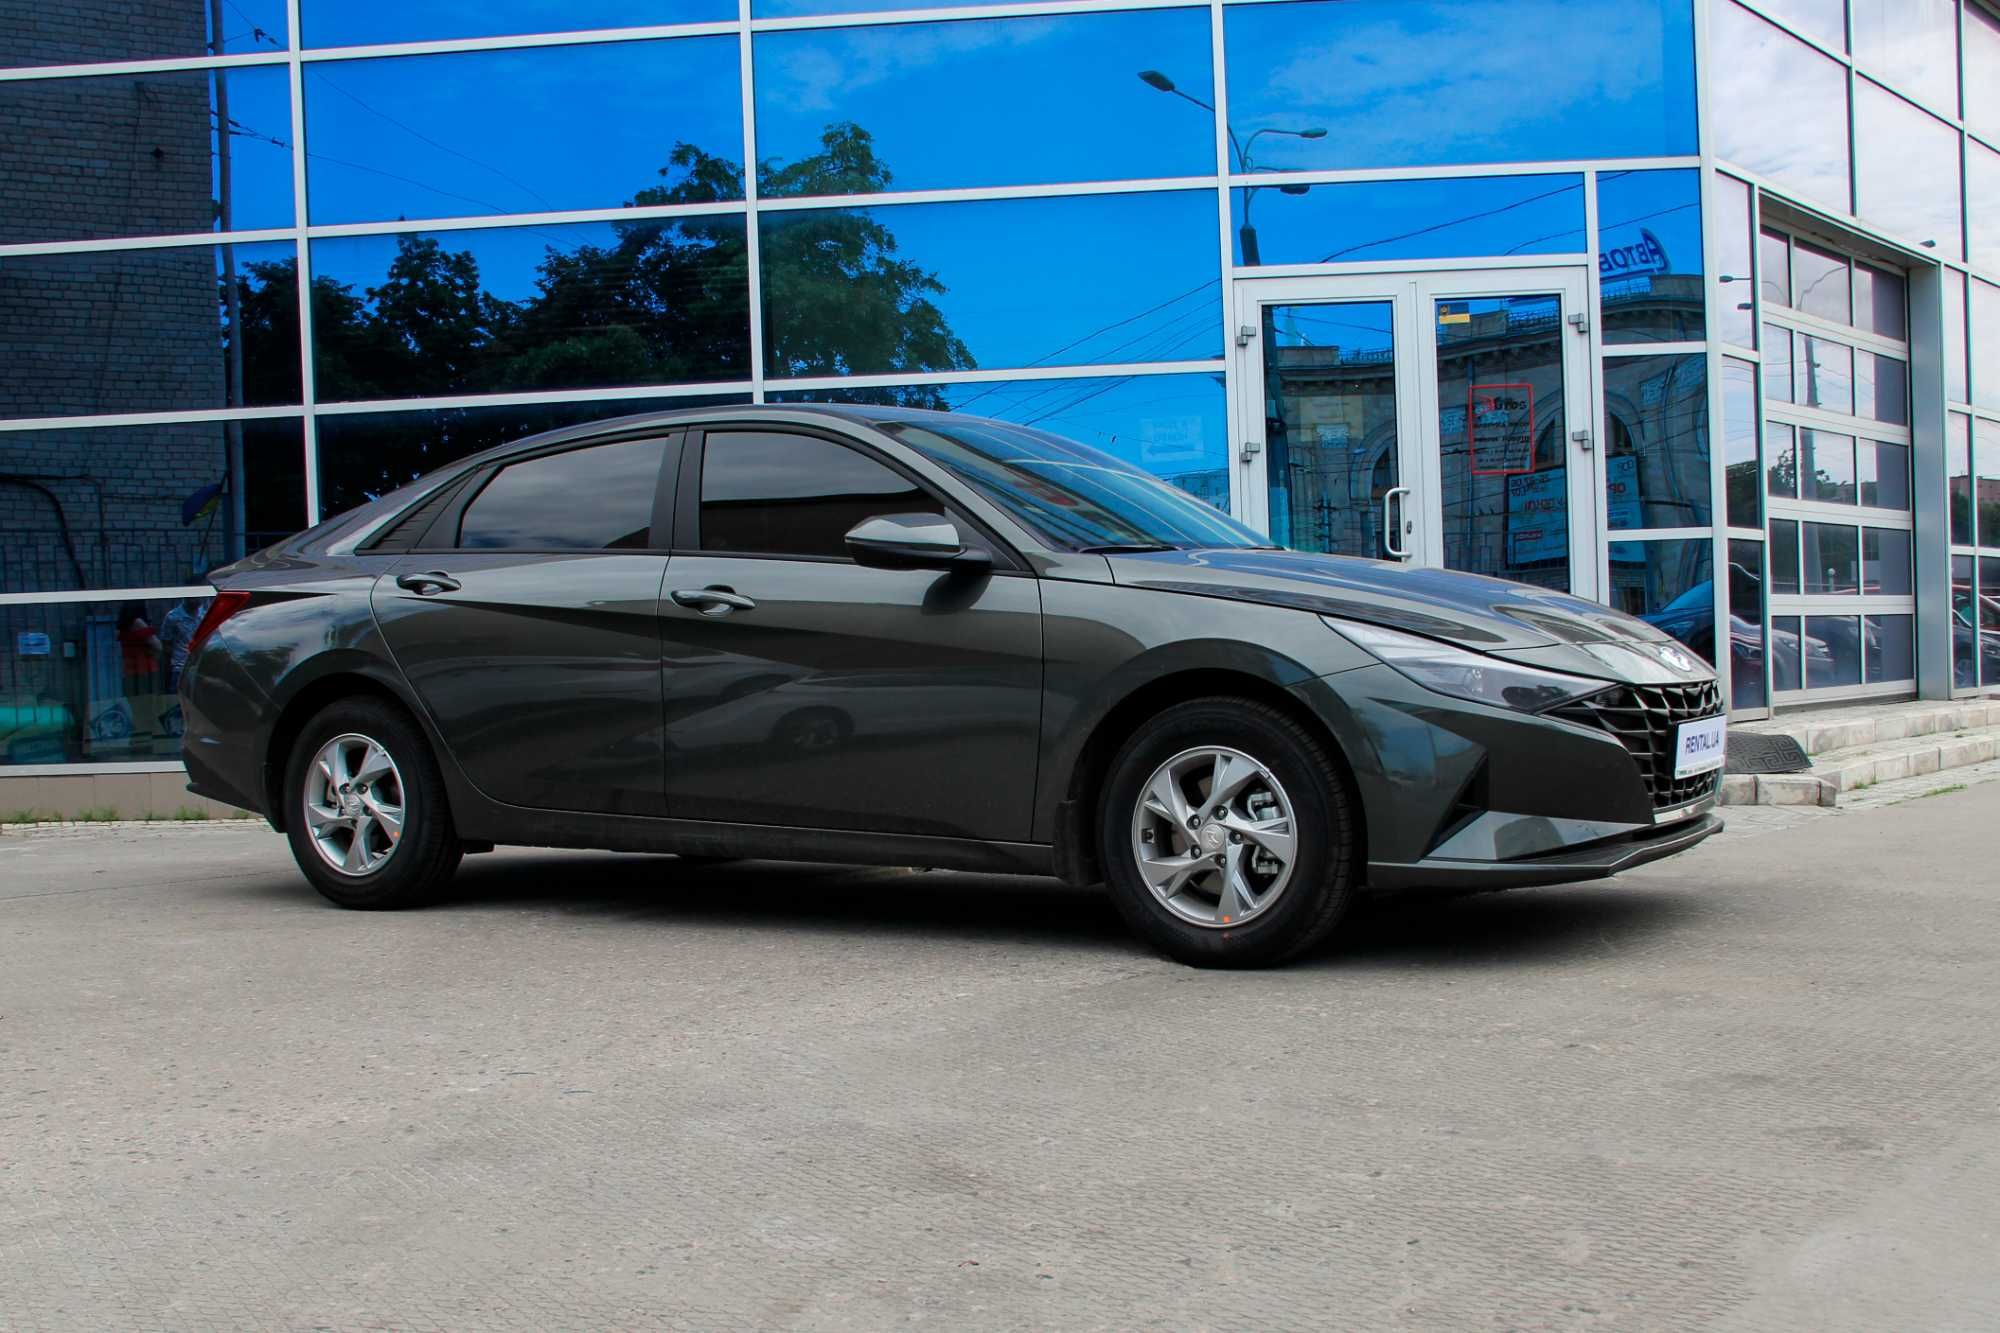 Аренда авто, прокат авто Hyundai Elantra в Одессе без водителя